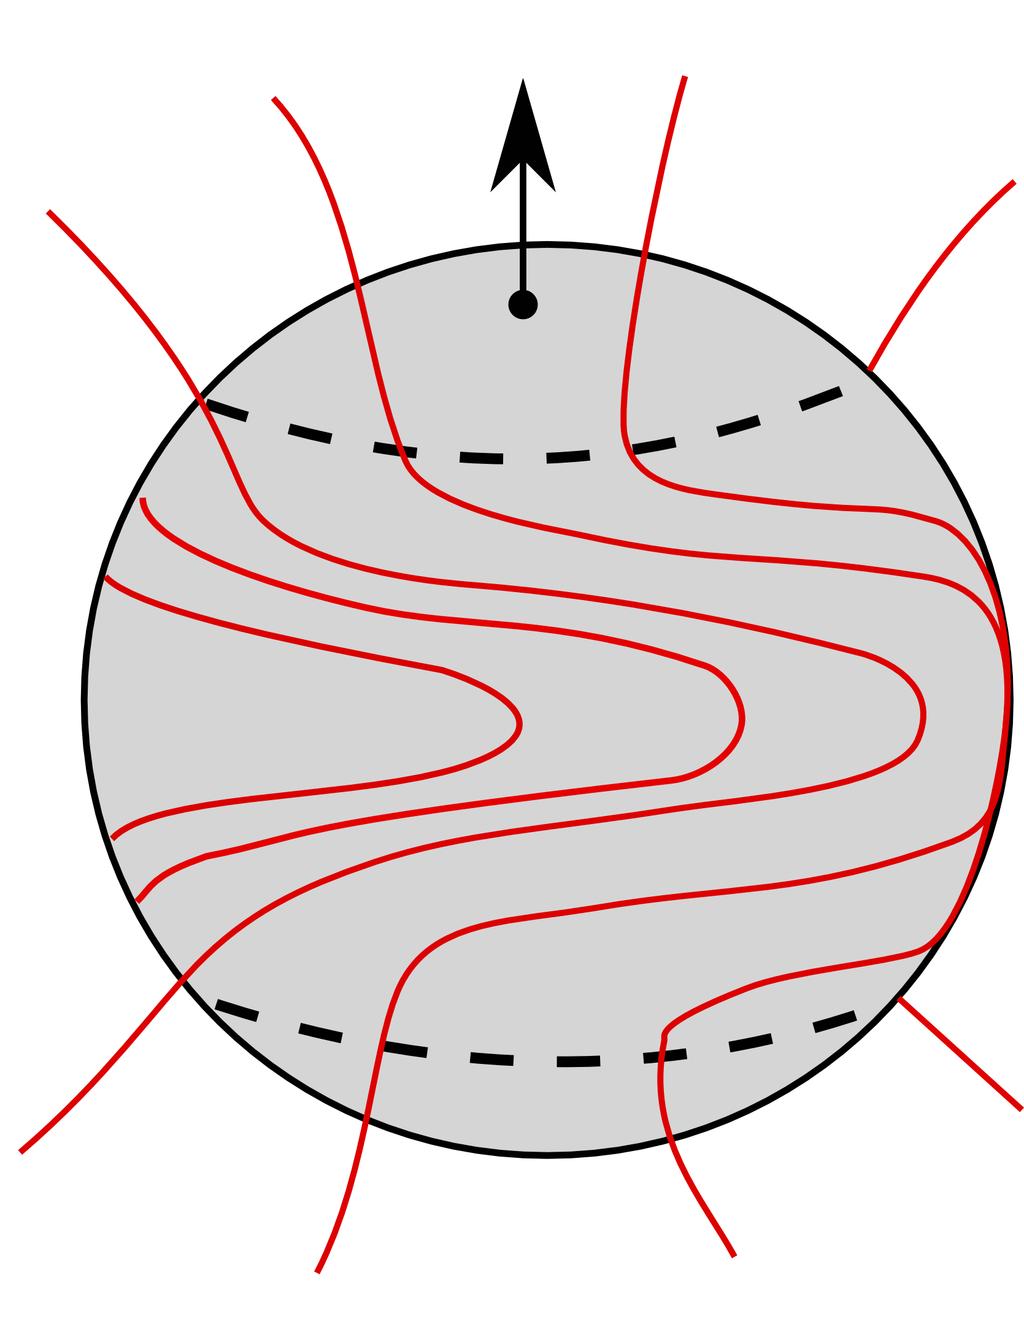 Στο δεύτερο στάδιο, οι παγωμένες δυναμικές γραμμές του μαγνητικού πεδίου παραμορφώνονται από τη διαφορική περιστροφή, αφού οι ισημερινές περιοχές περιστρέφονται πιο γρήγορα από τις πολικές.